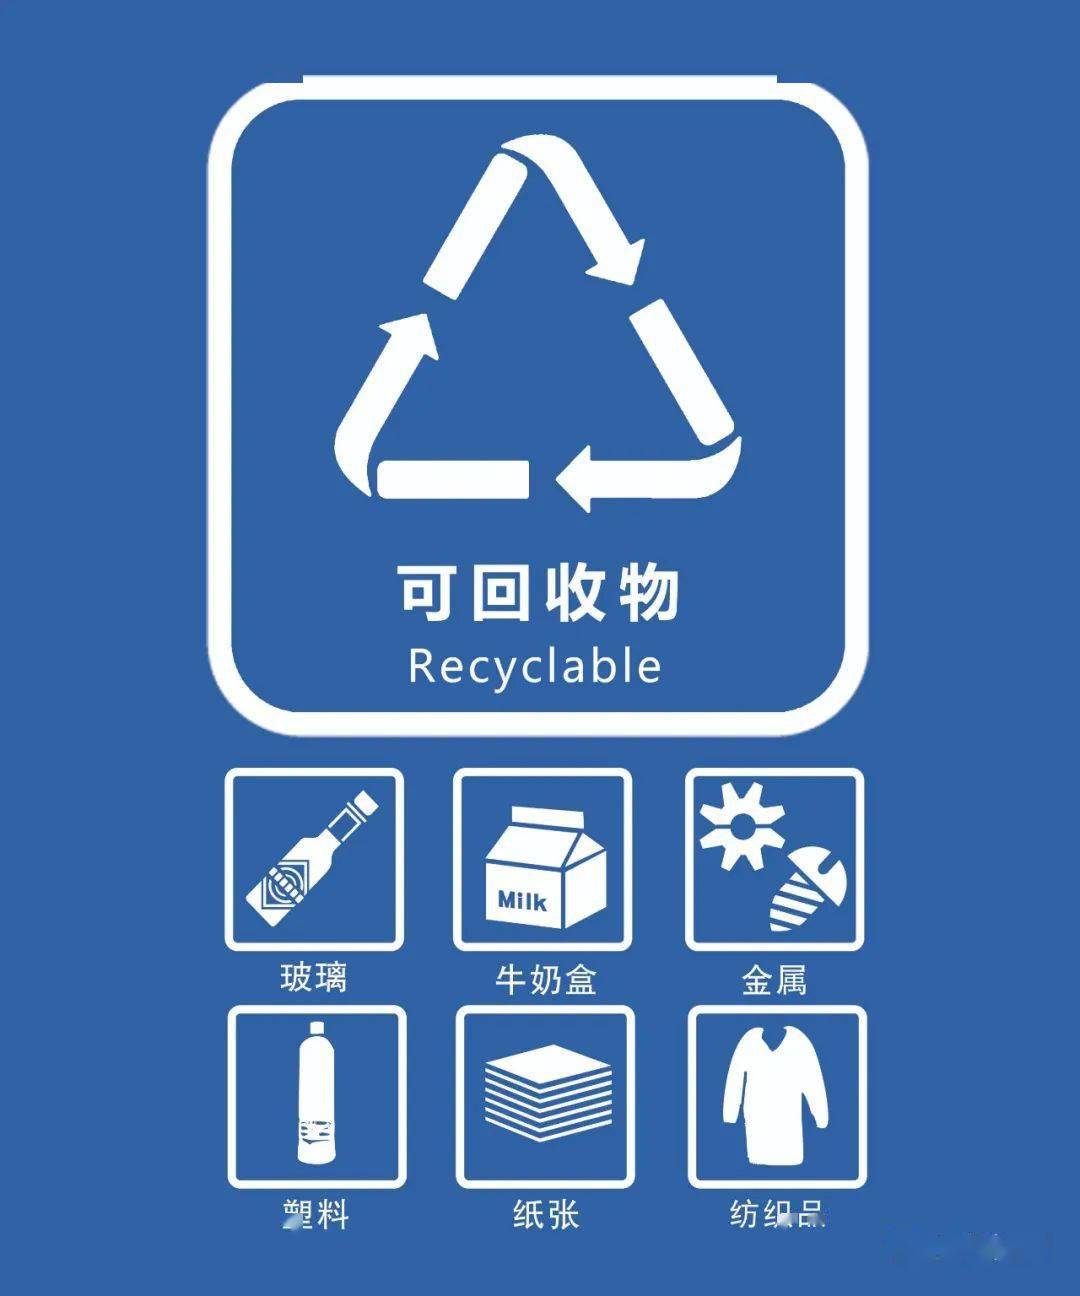 【垃圾分类】杭州市垃圾分类标识图,你知道了吗?